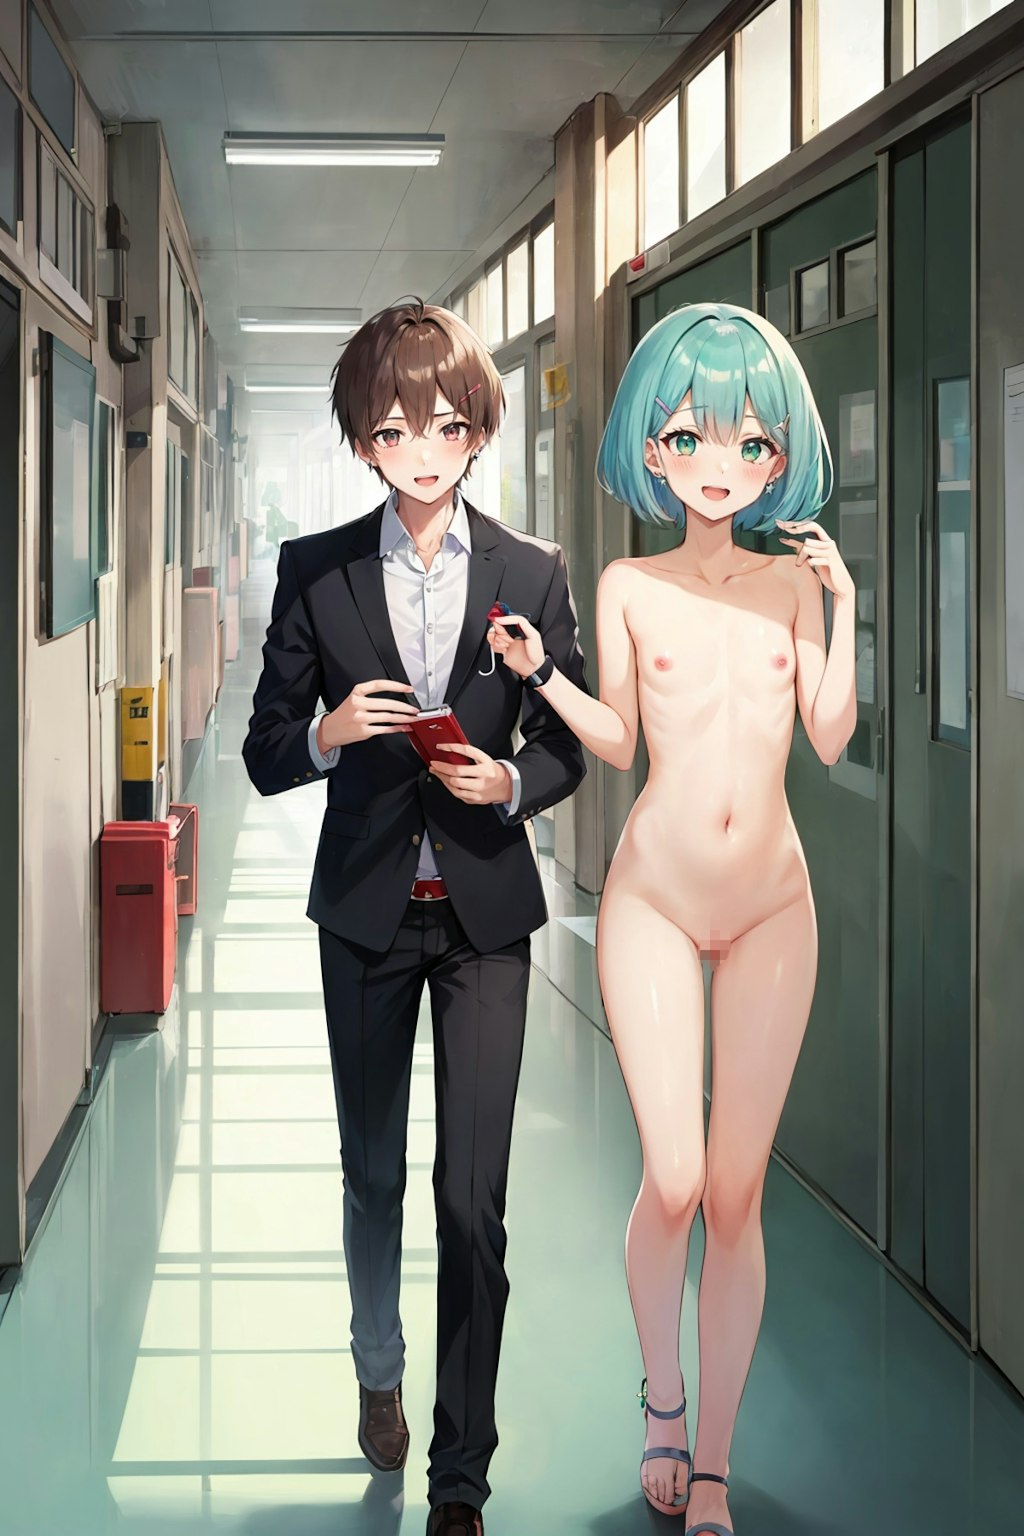 [リクエスト]学校の廊下で男(制服)女(裸)が歩いている